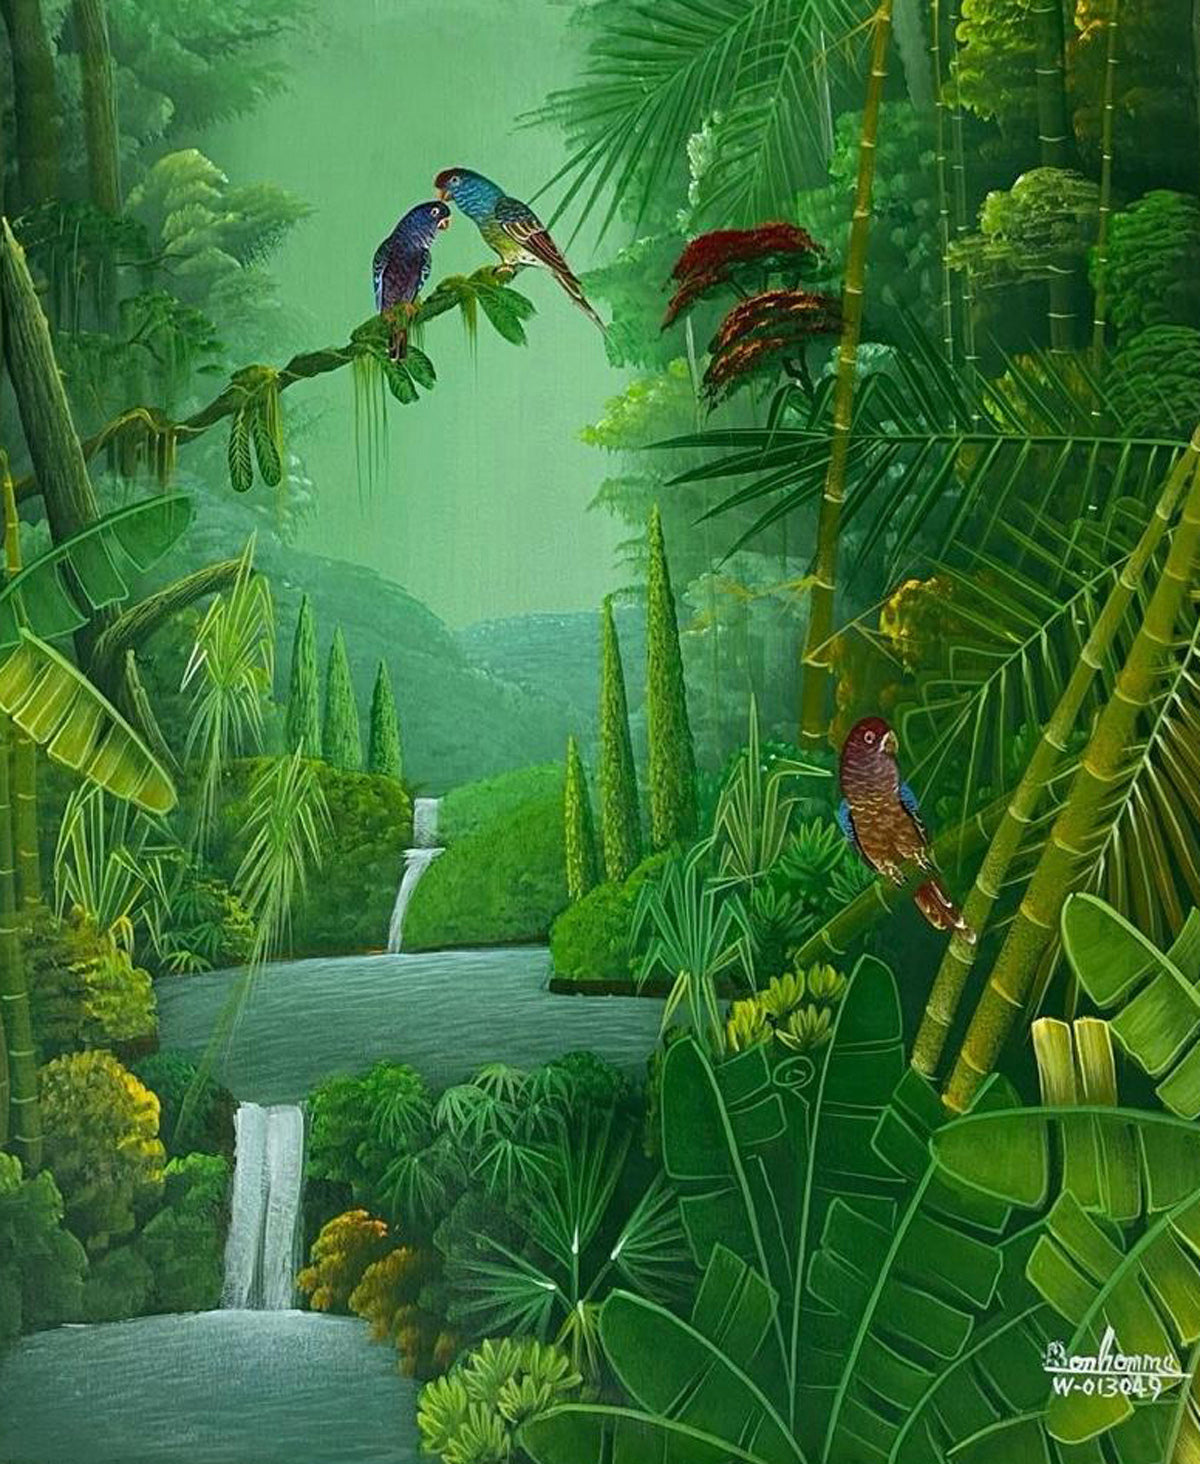 Albott Bonhomme 24"x20" Lush Vegetation and Cascades 2021 Acrylic on Canvas #14MFN